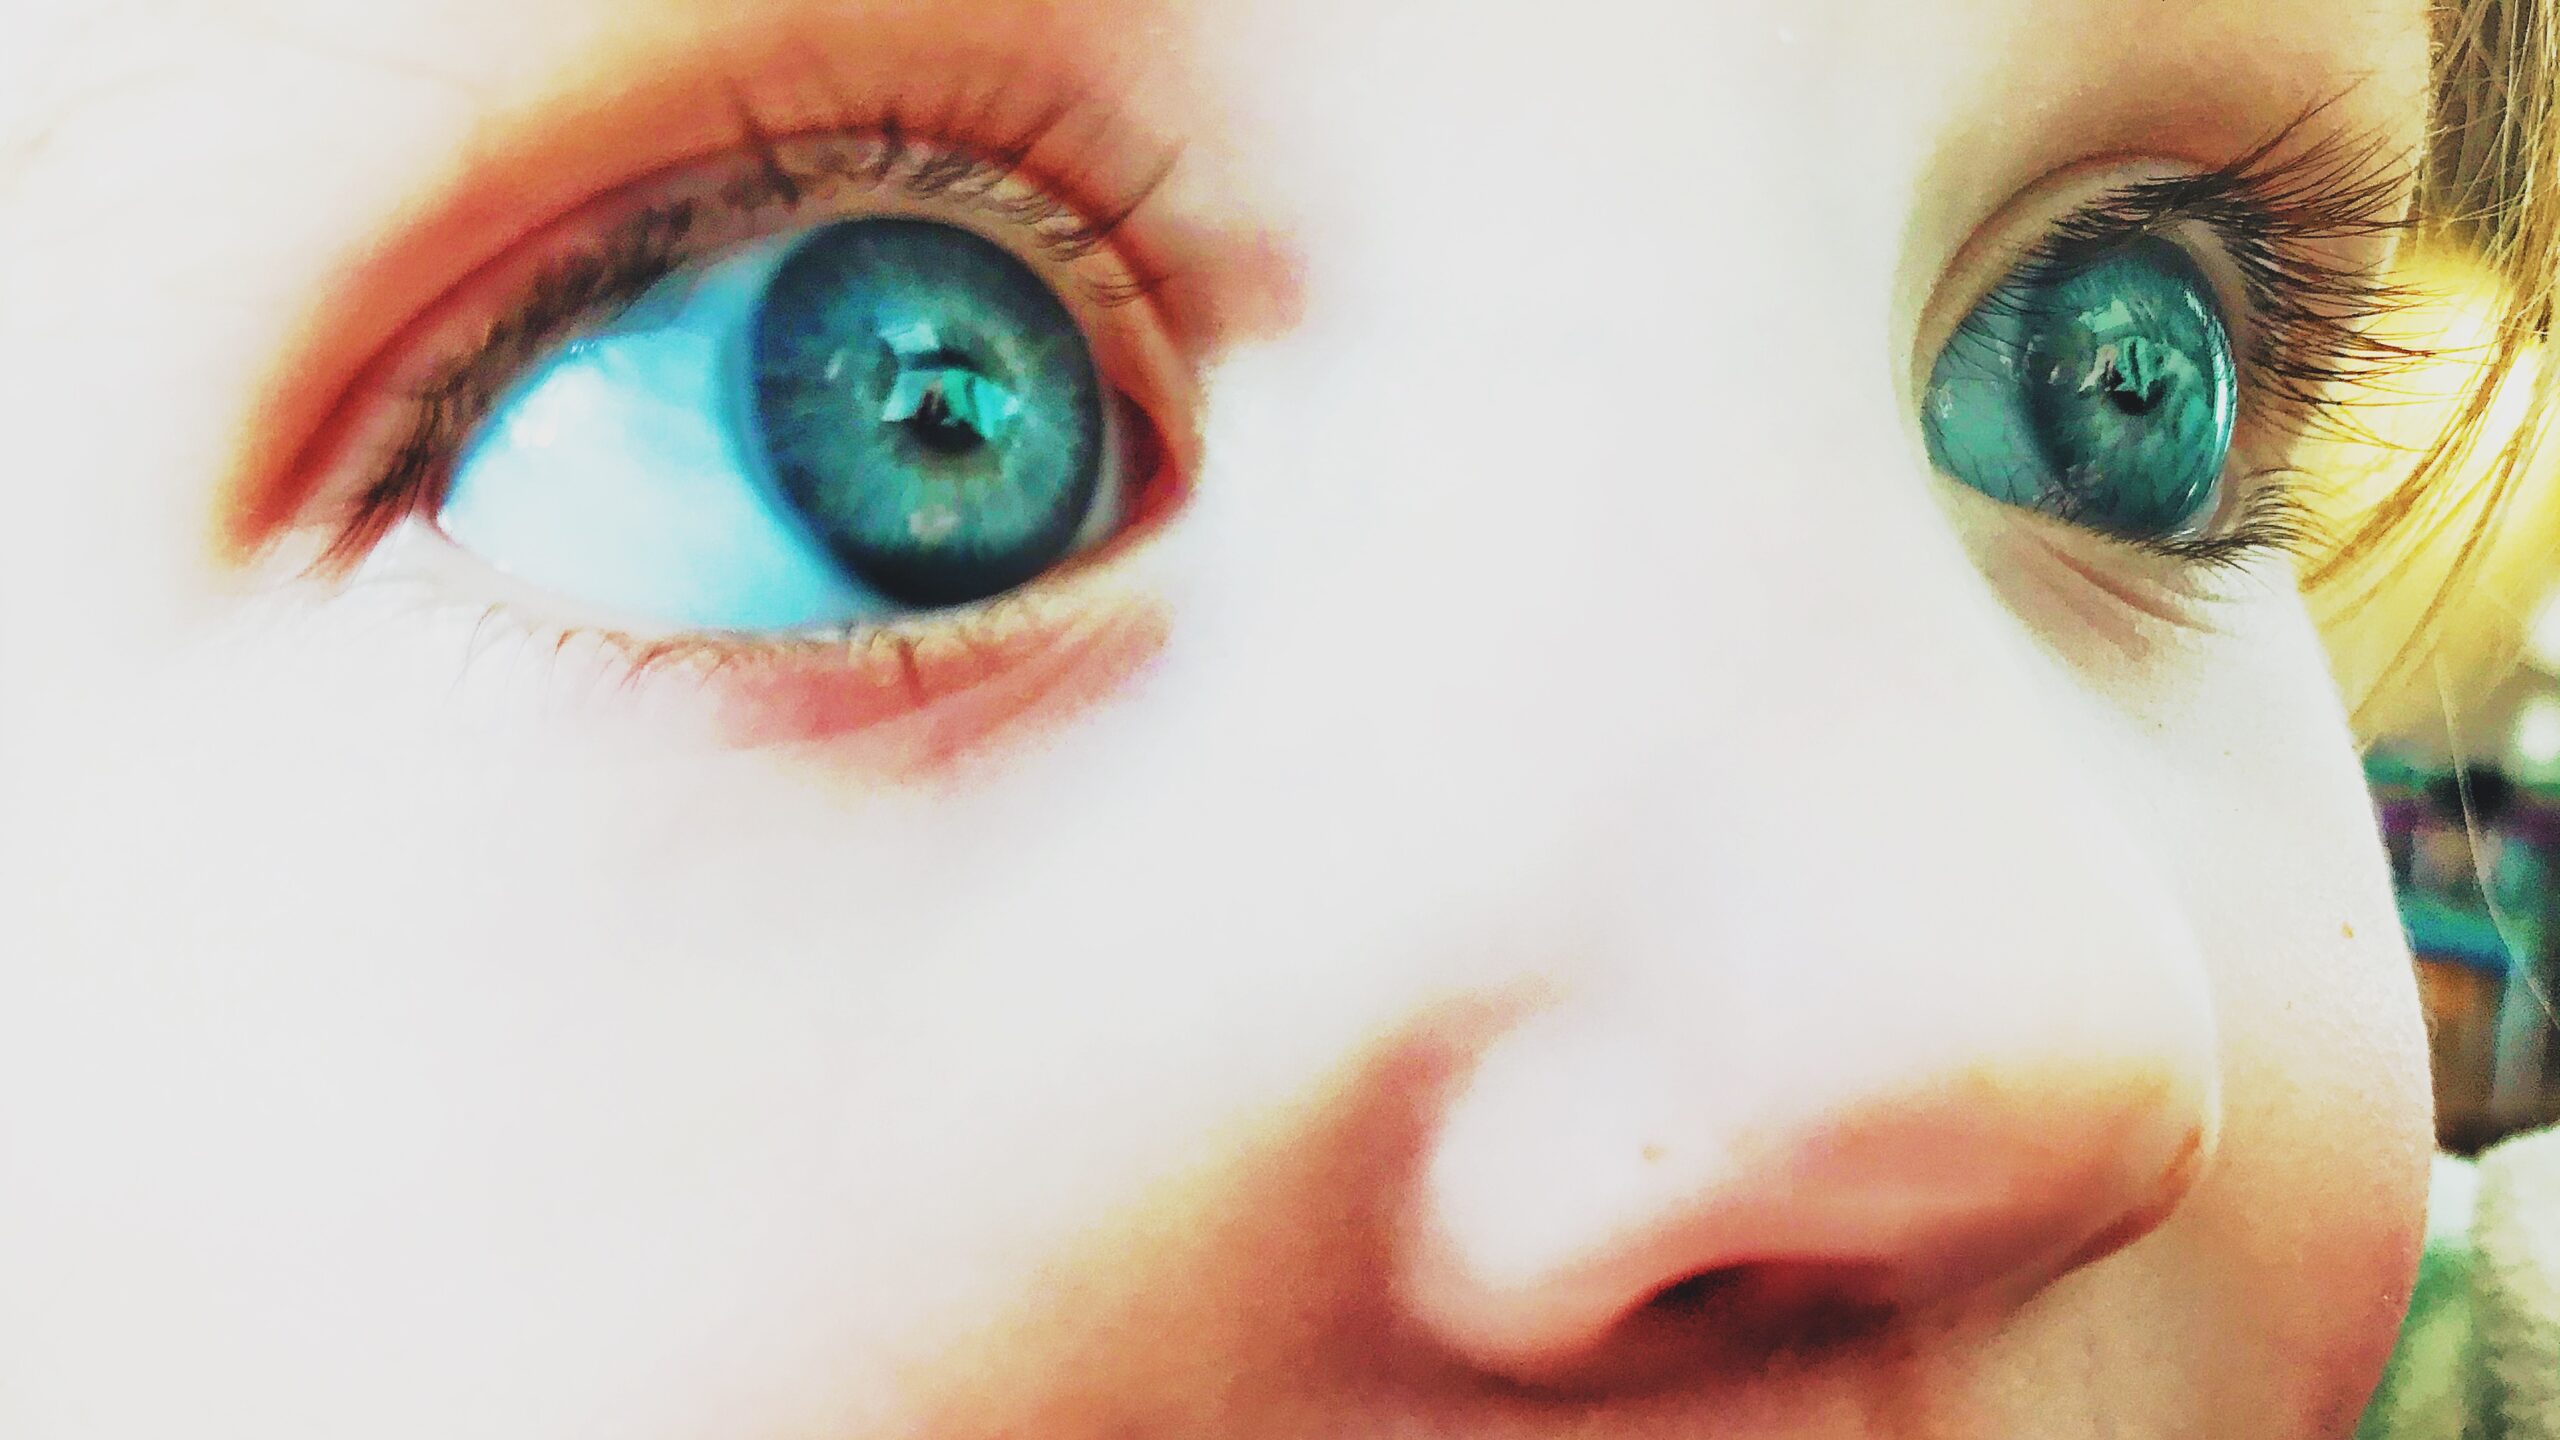 Child’s eyes